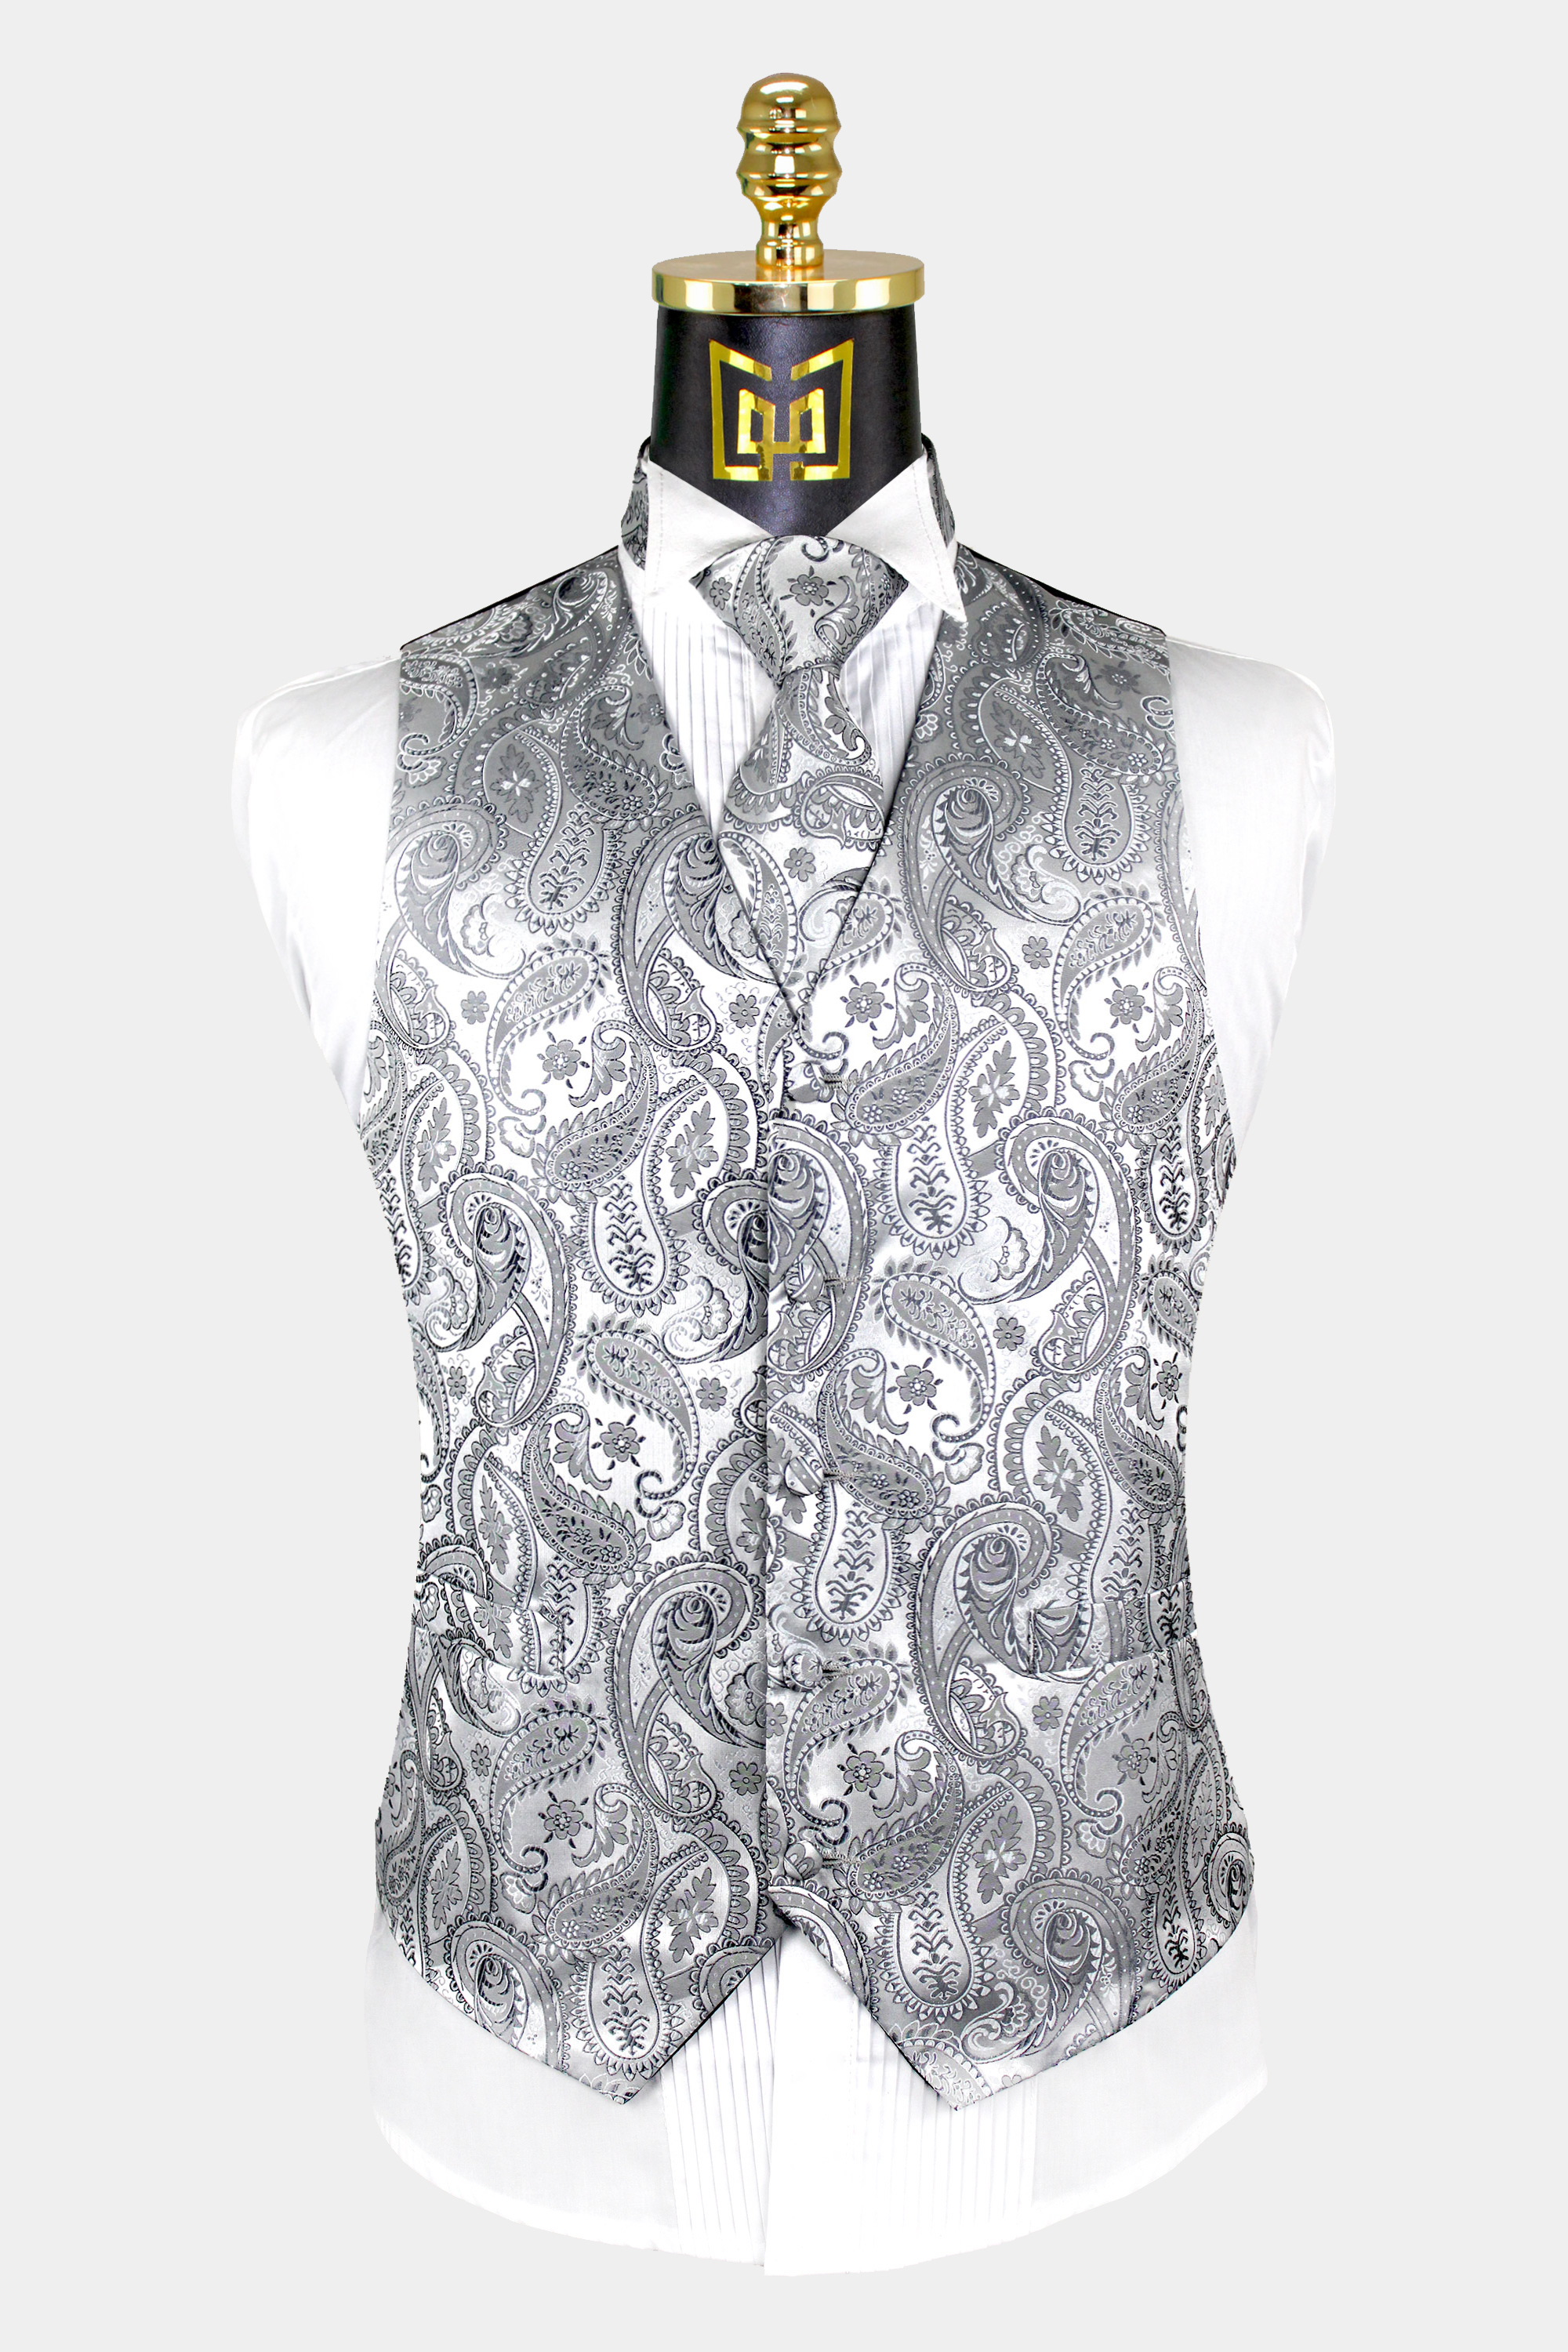 Mens-Silver-Paisley-Vest-and-Tie-Set-Groom-Wedding-Tuxedo-Vest-from-Gentlemansguru.com